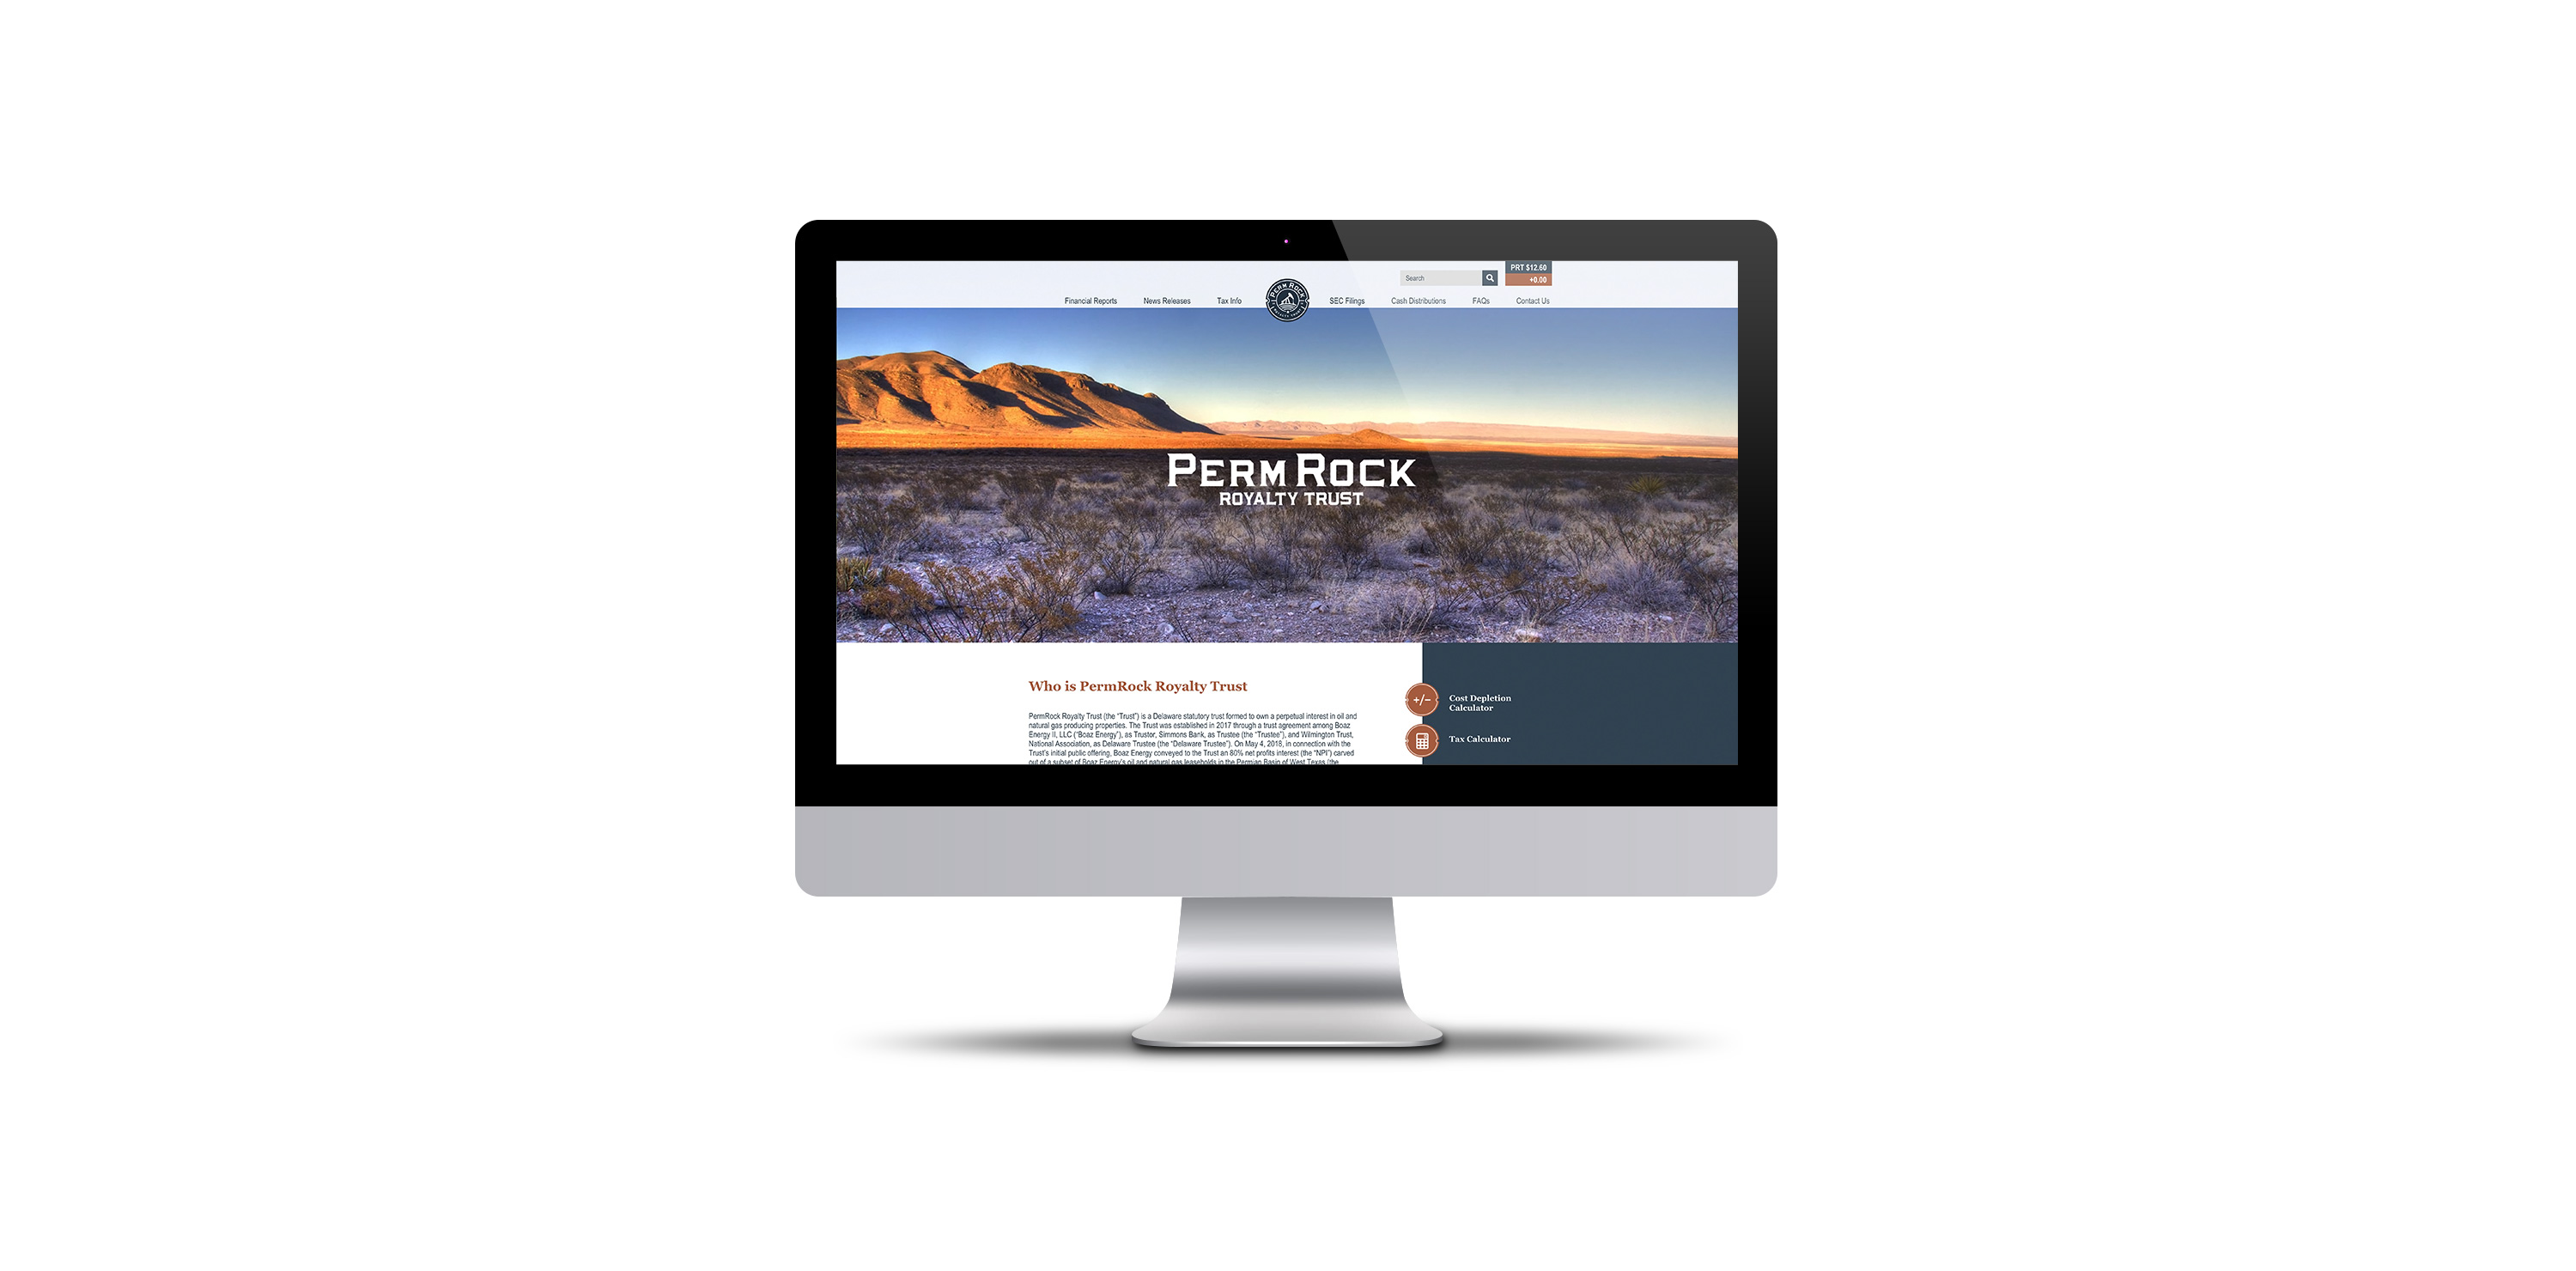 PermRock Royalty Trust Website Homepage